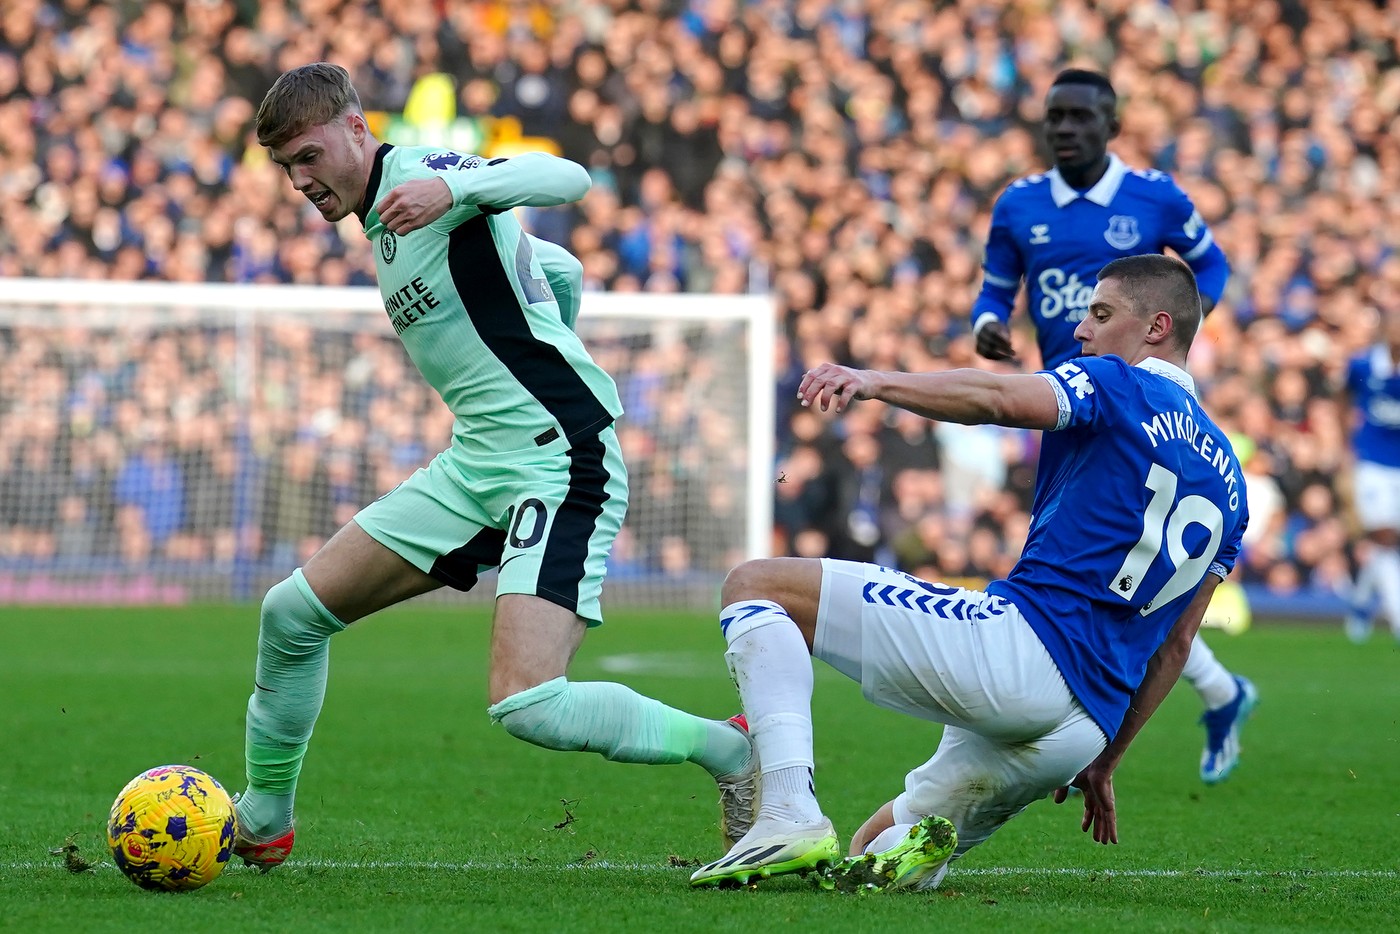 Chelsea - Everton, Live Video, 22:00, Digi Sport 2. Londonezii au șansa revanșei, după eșecul din tur. ECHIPELE